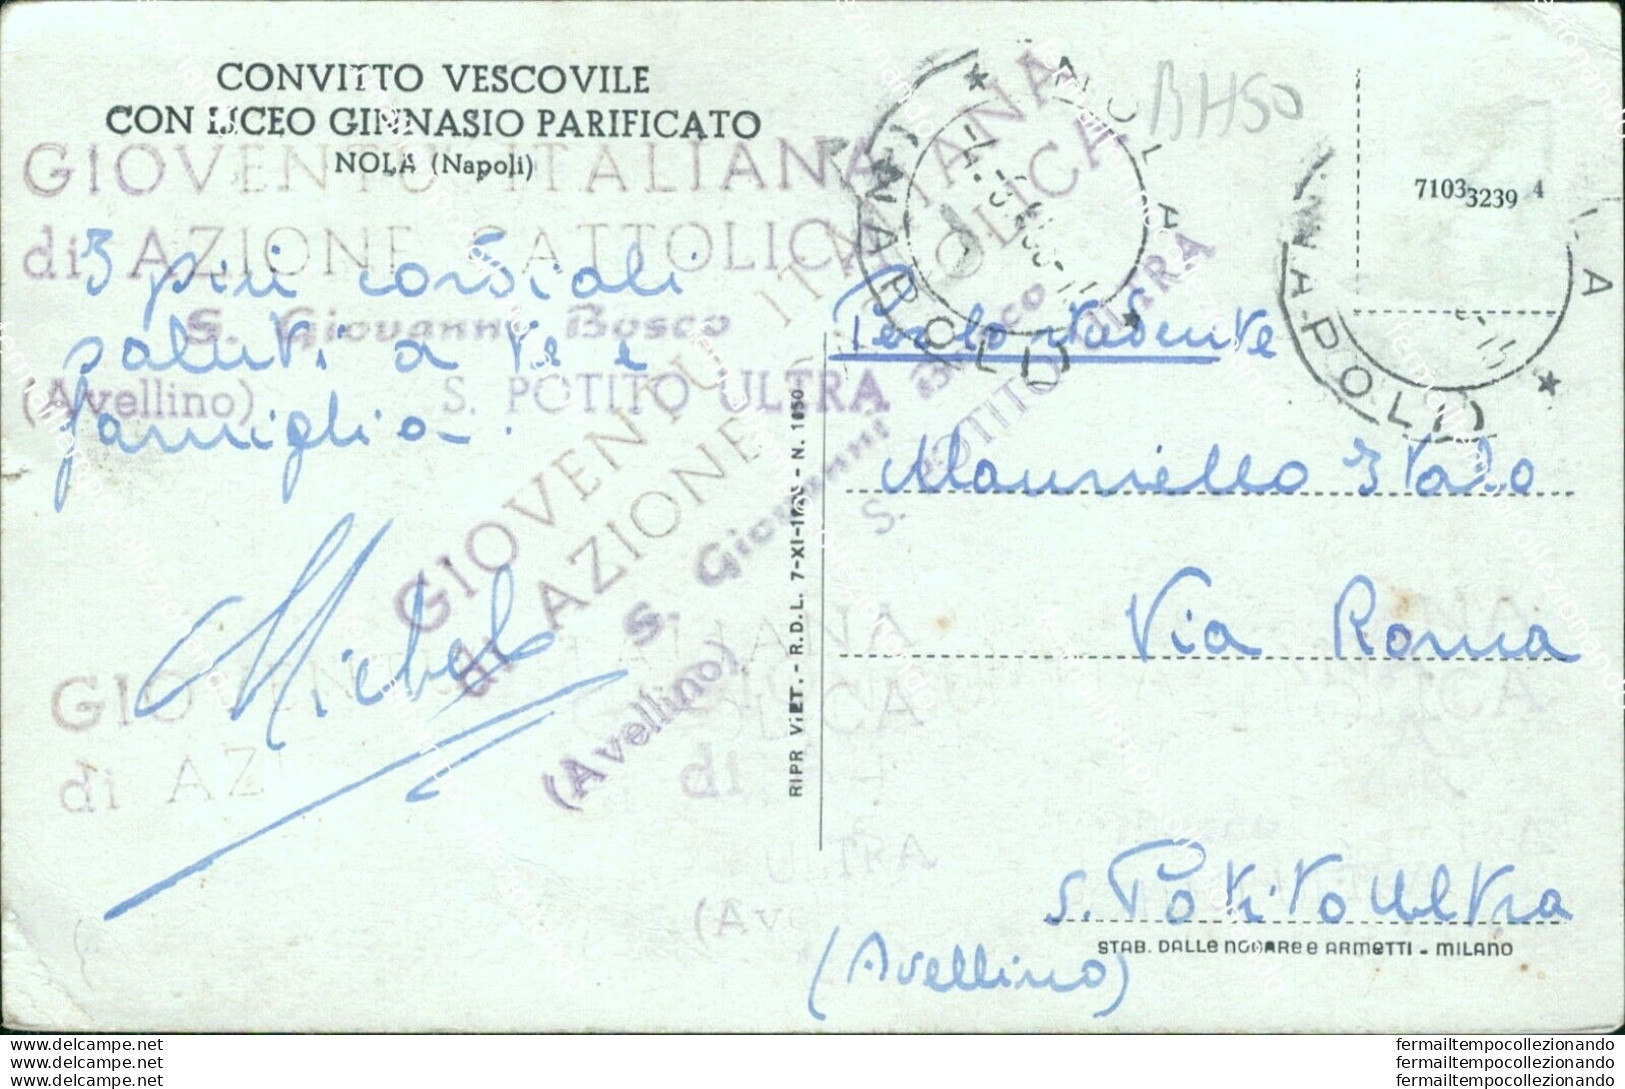 Bh50 Cartolina Nola Convitto Vescovile Con Liceo Ginnasio Provincia Di Napoli - Napoli (Naples)